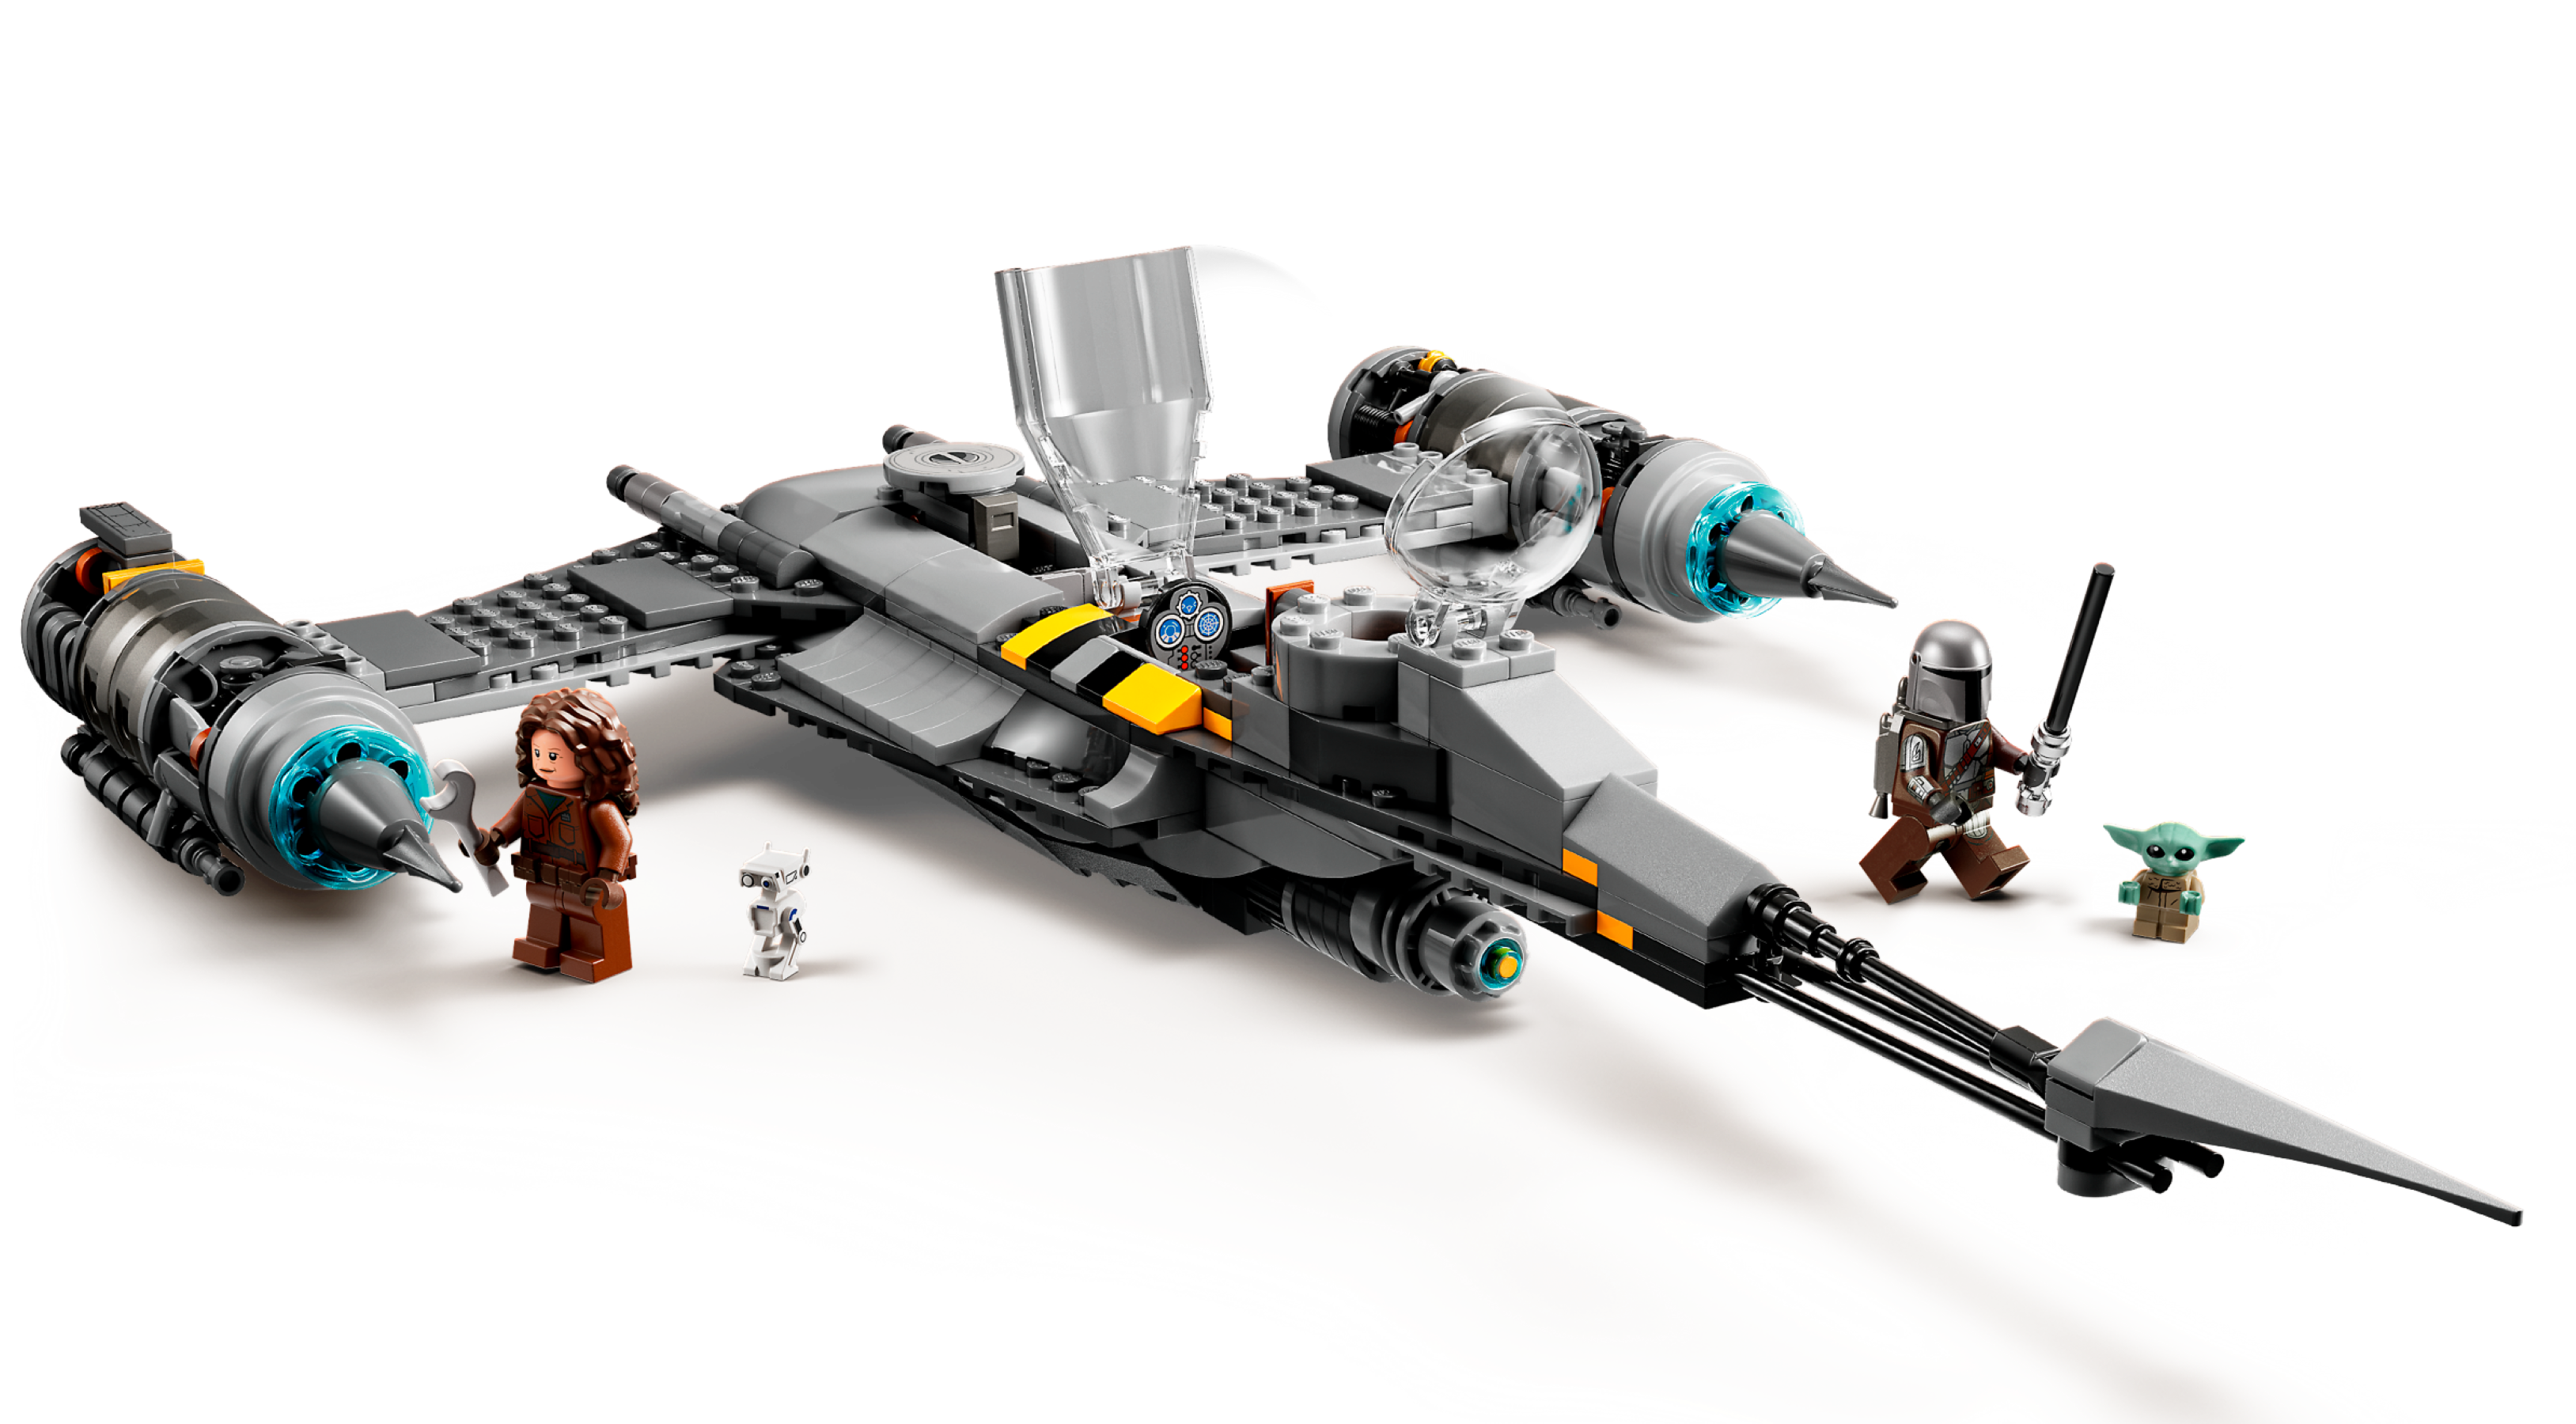 LEGO® Star Wars : Le livre de Boba Fett - Le chasseur N-1 du Mandalorien  75325 - Jeu de construction pour les enfants dès 9 ans gris - Lego